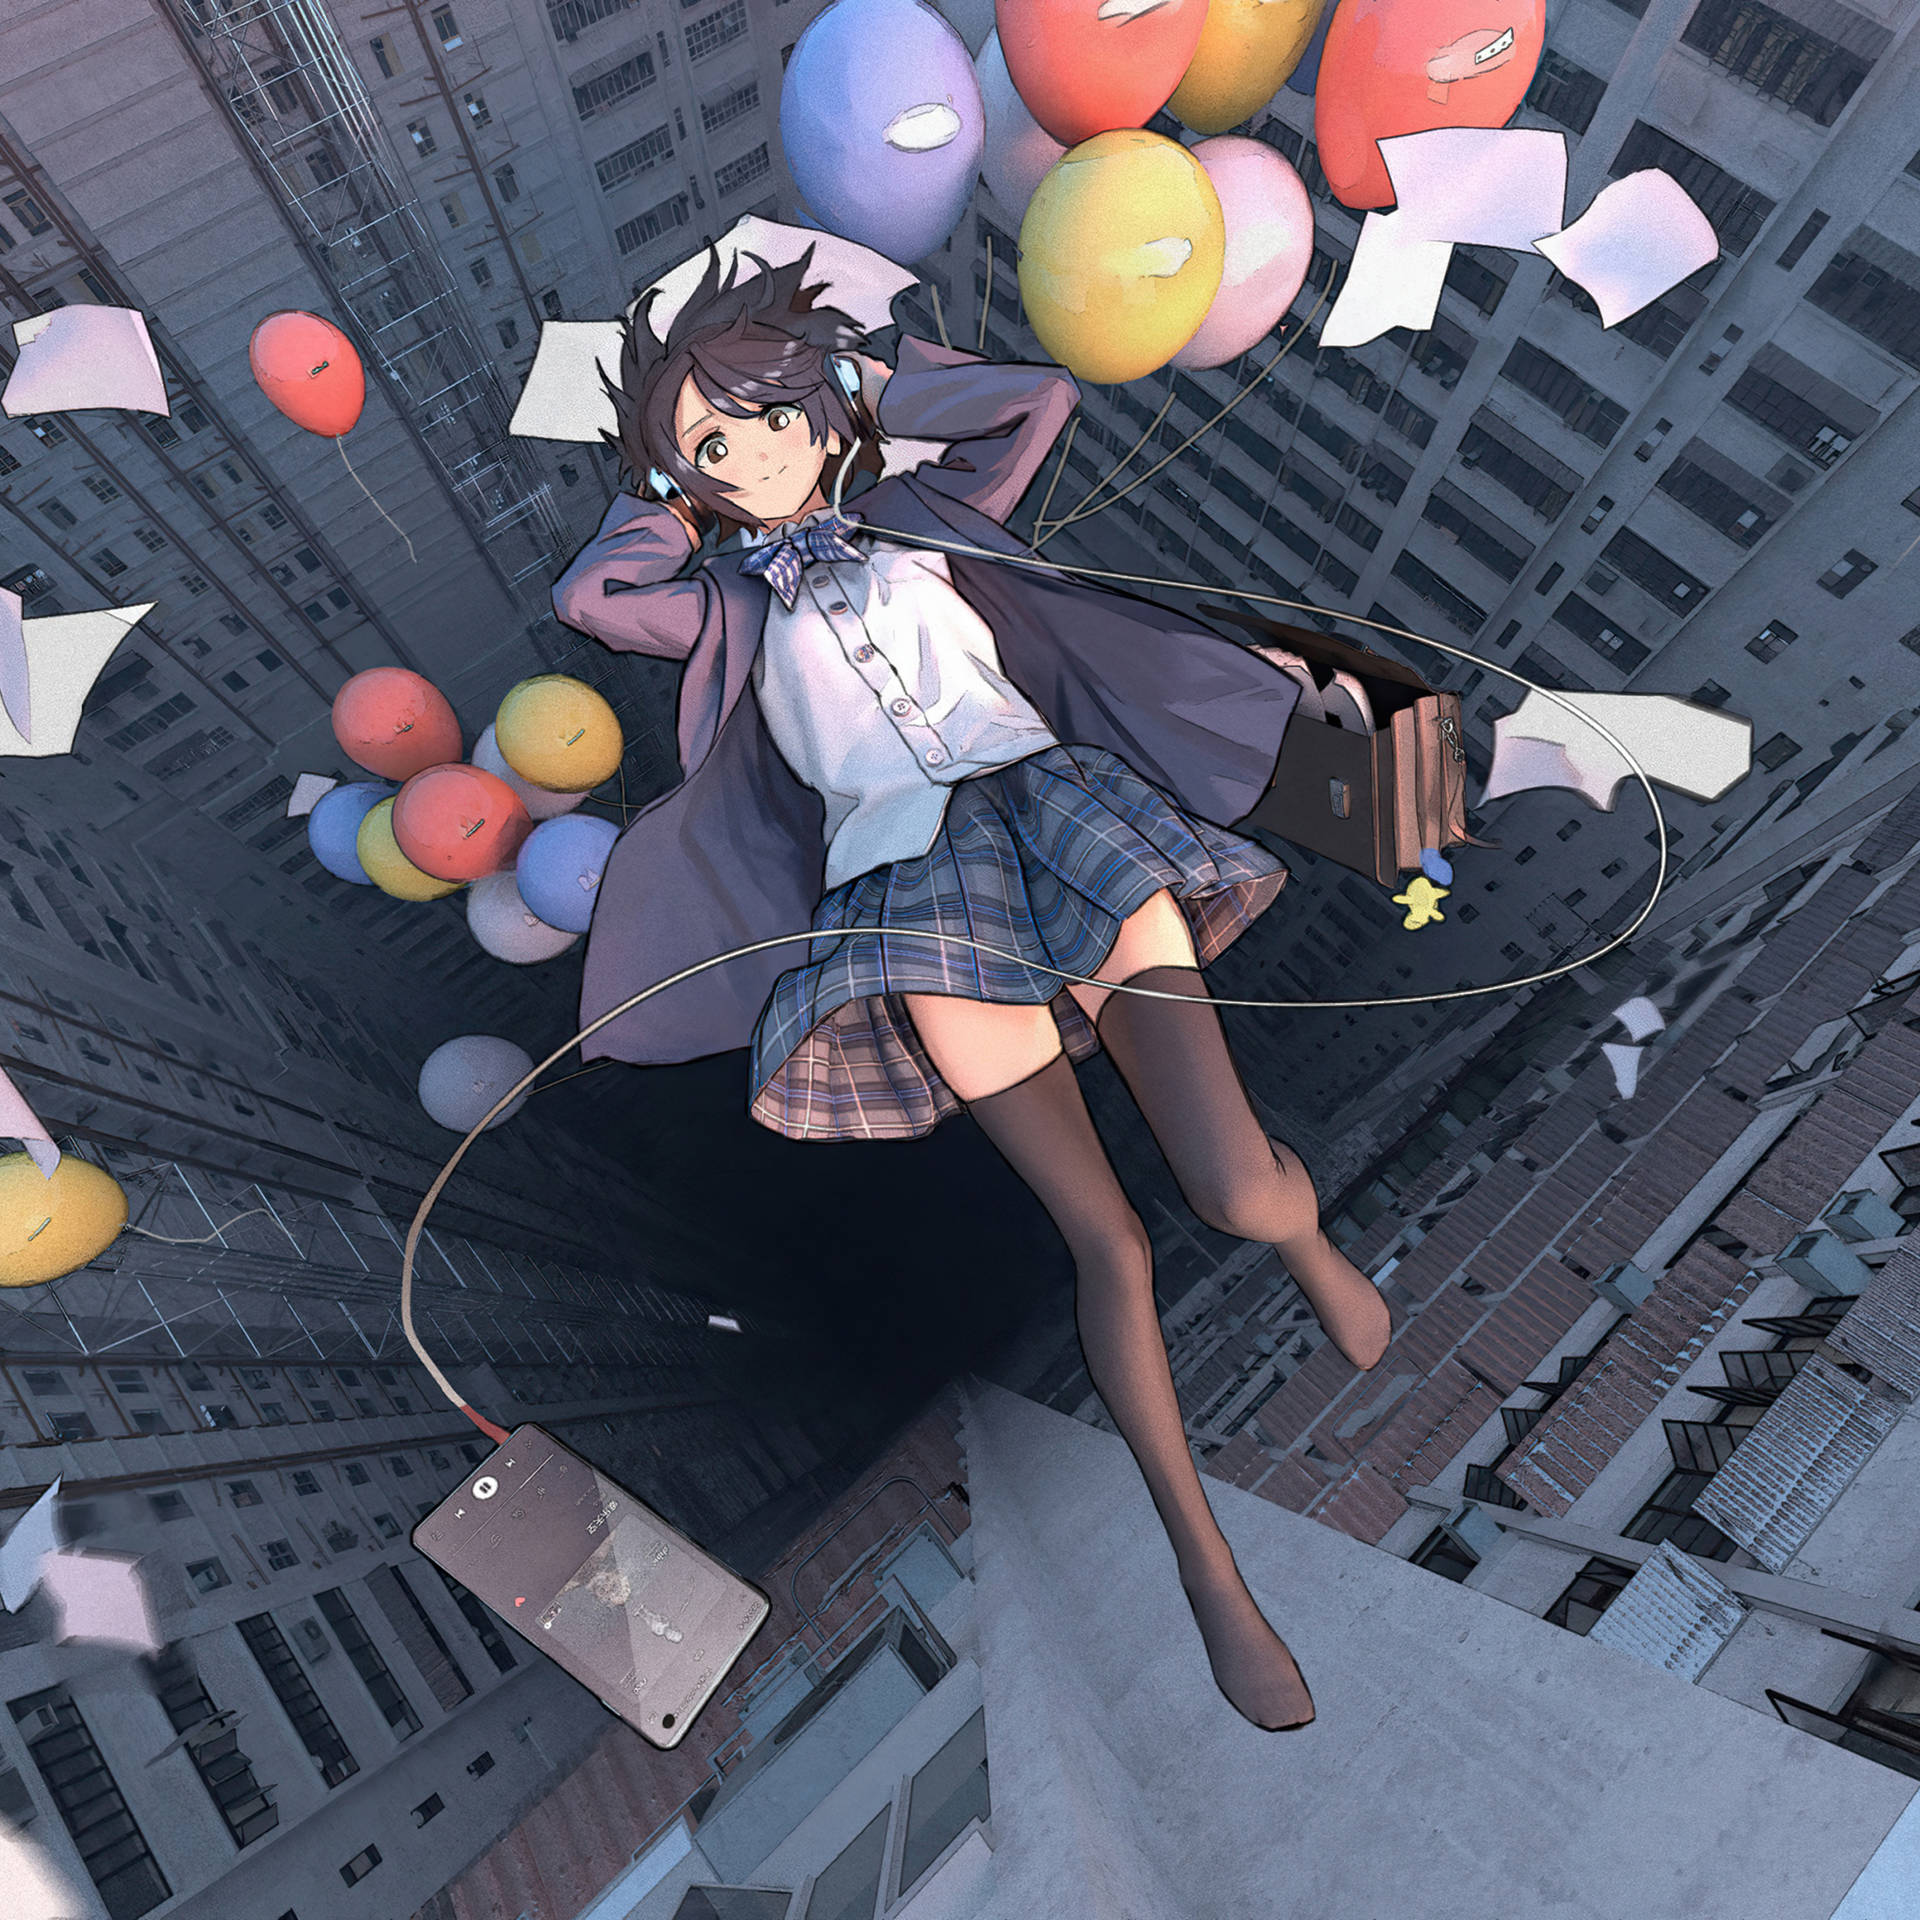 Wallpaper: Anime iPad-pige, der falder med balloner tapet. Wallpaper